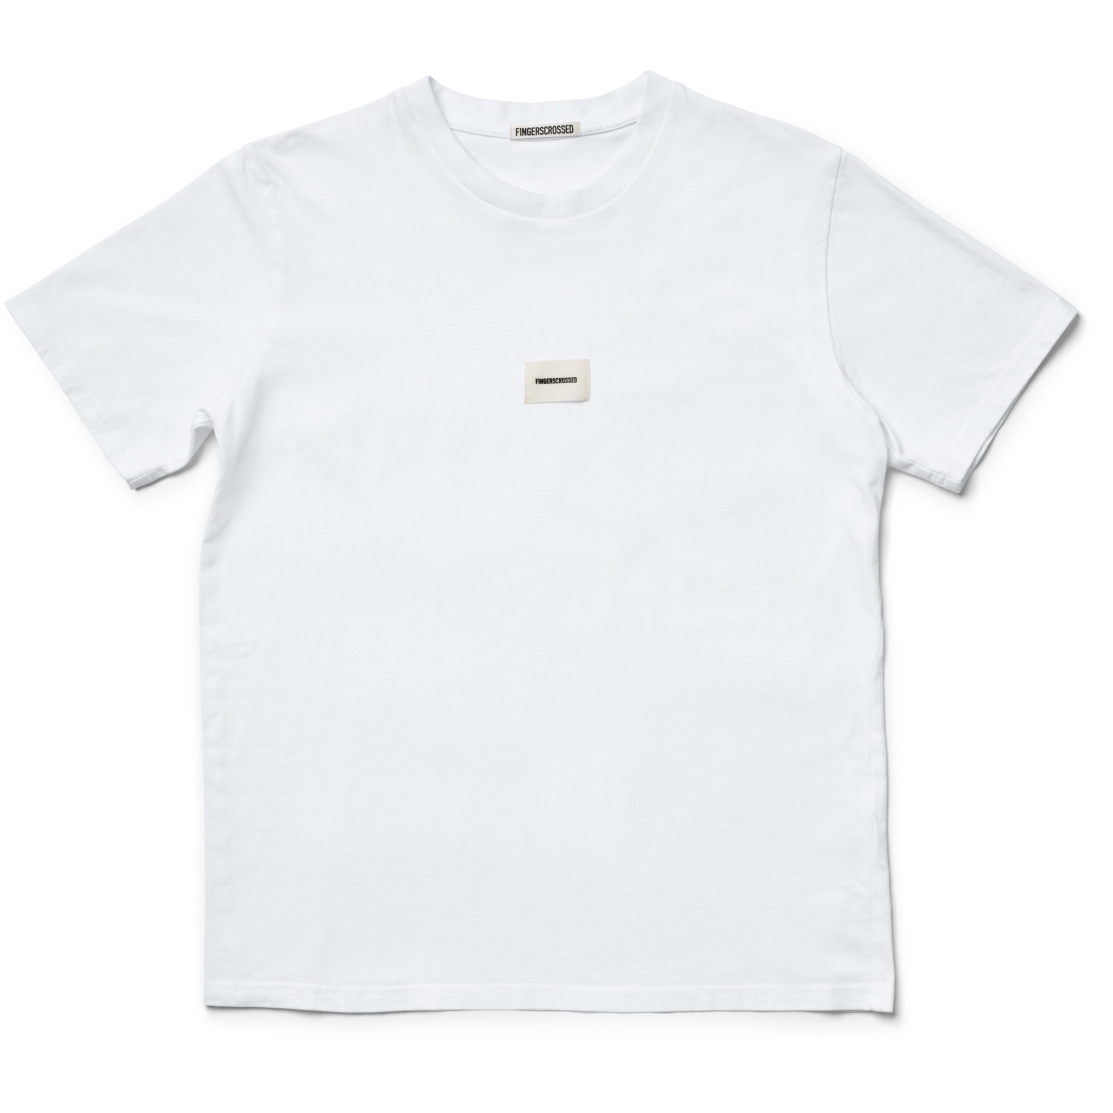 Produktbild von FINGERSCROSSED Classic T-Shirt - Logo - Weiß